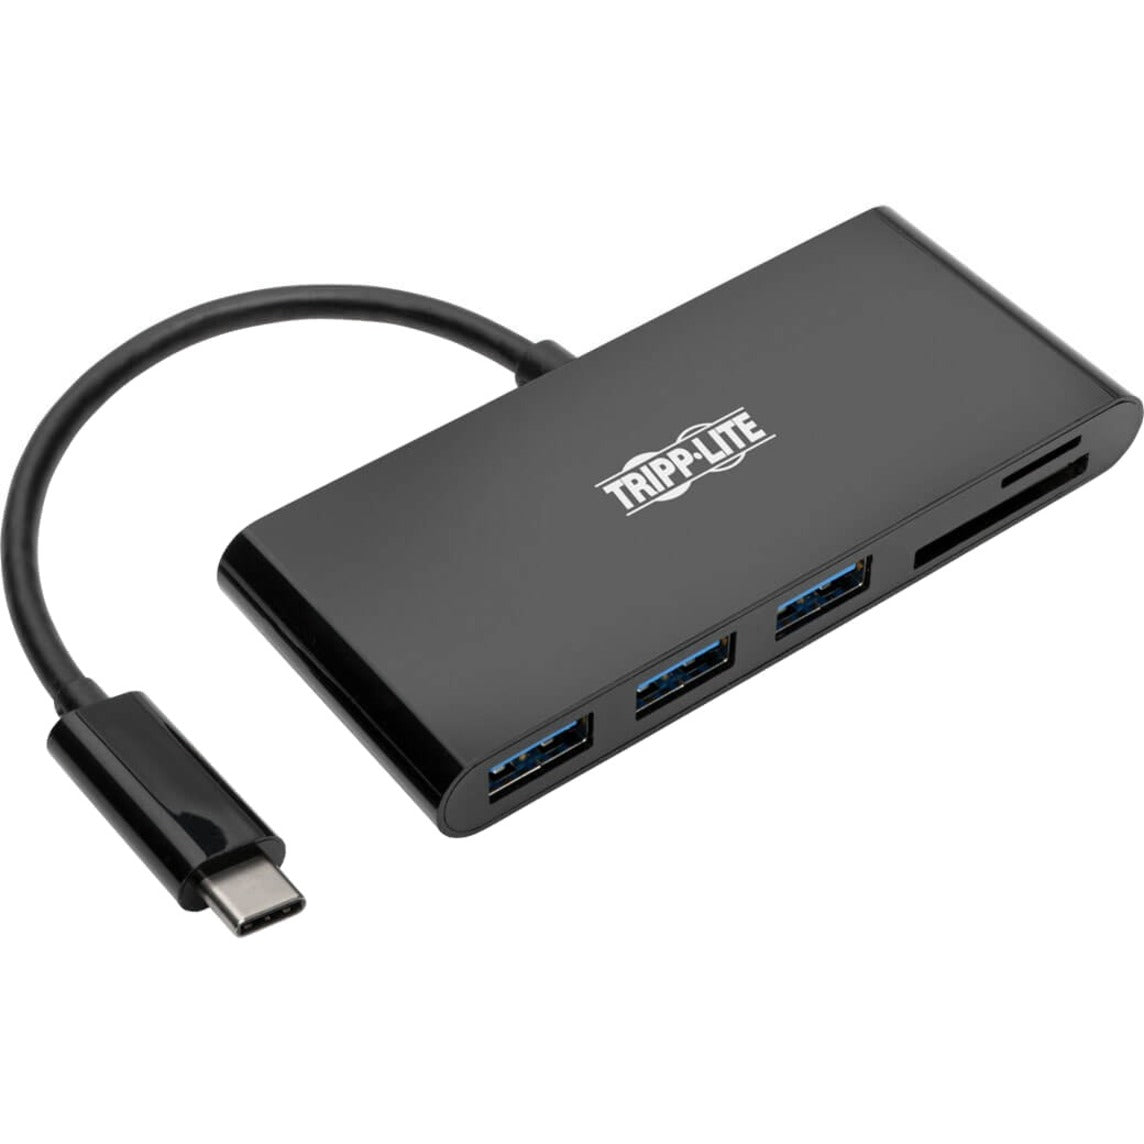 Tripp Lite U460-003-3AMB USB 3.1 Gen 1 USB-C Portable Hub/Adapter, Black, 3-Port USB Hub